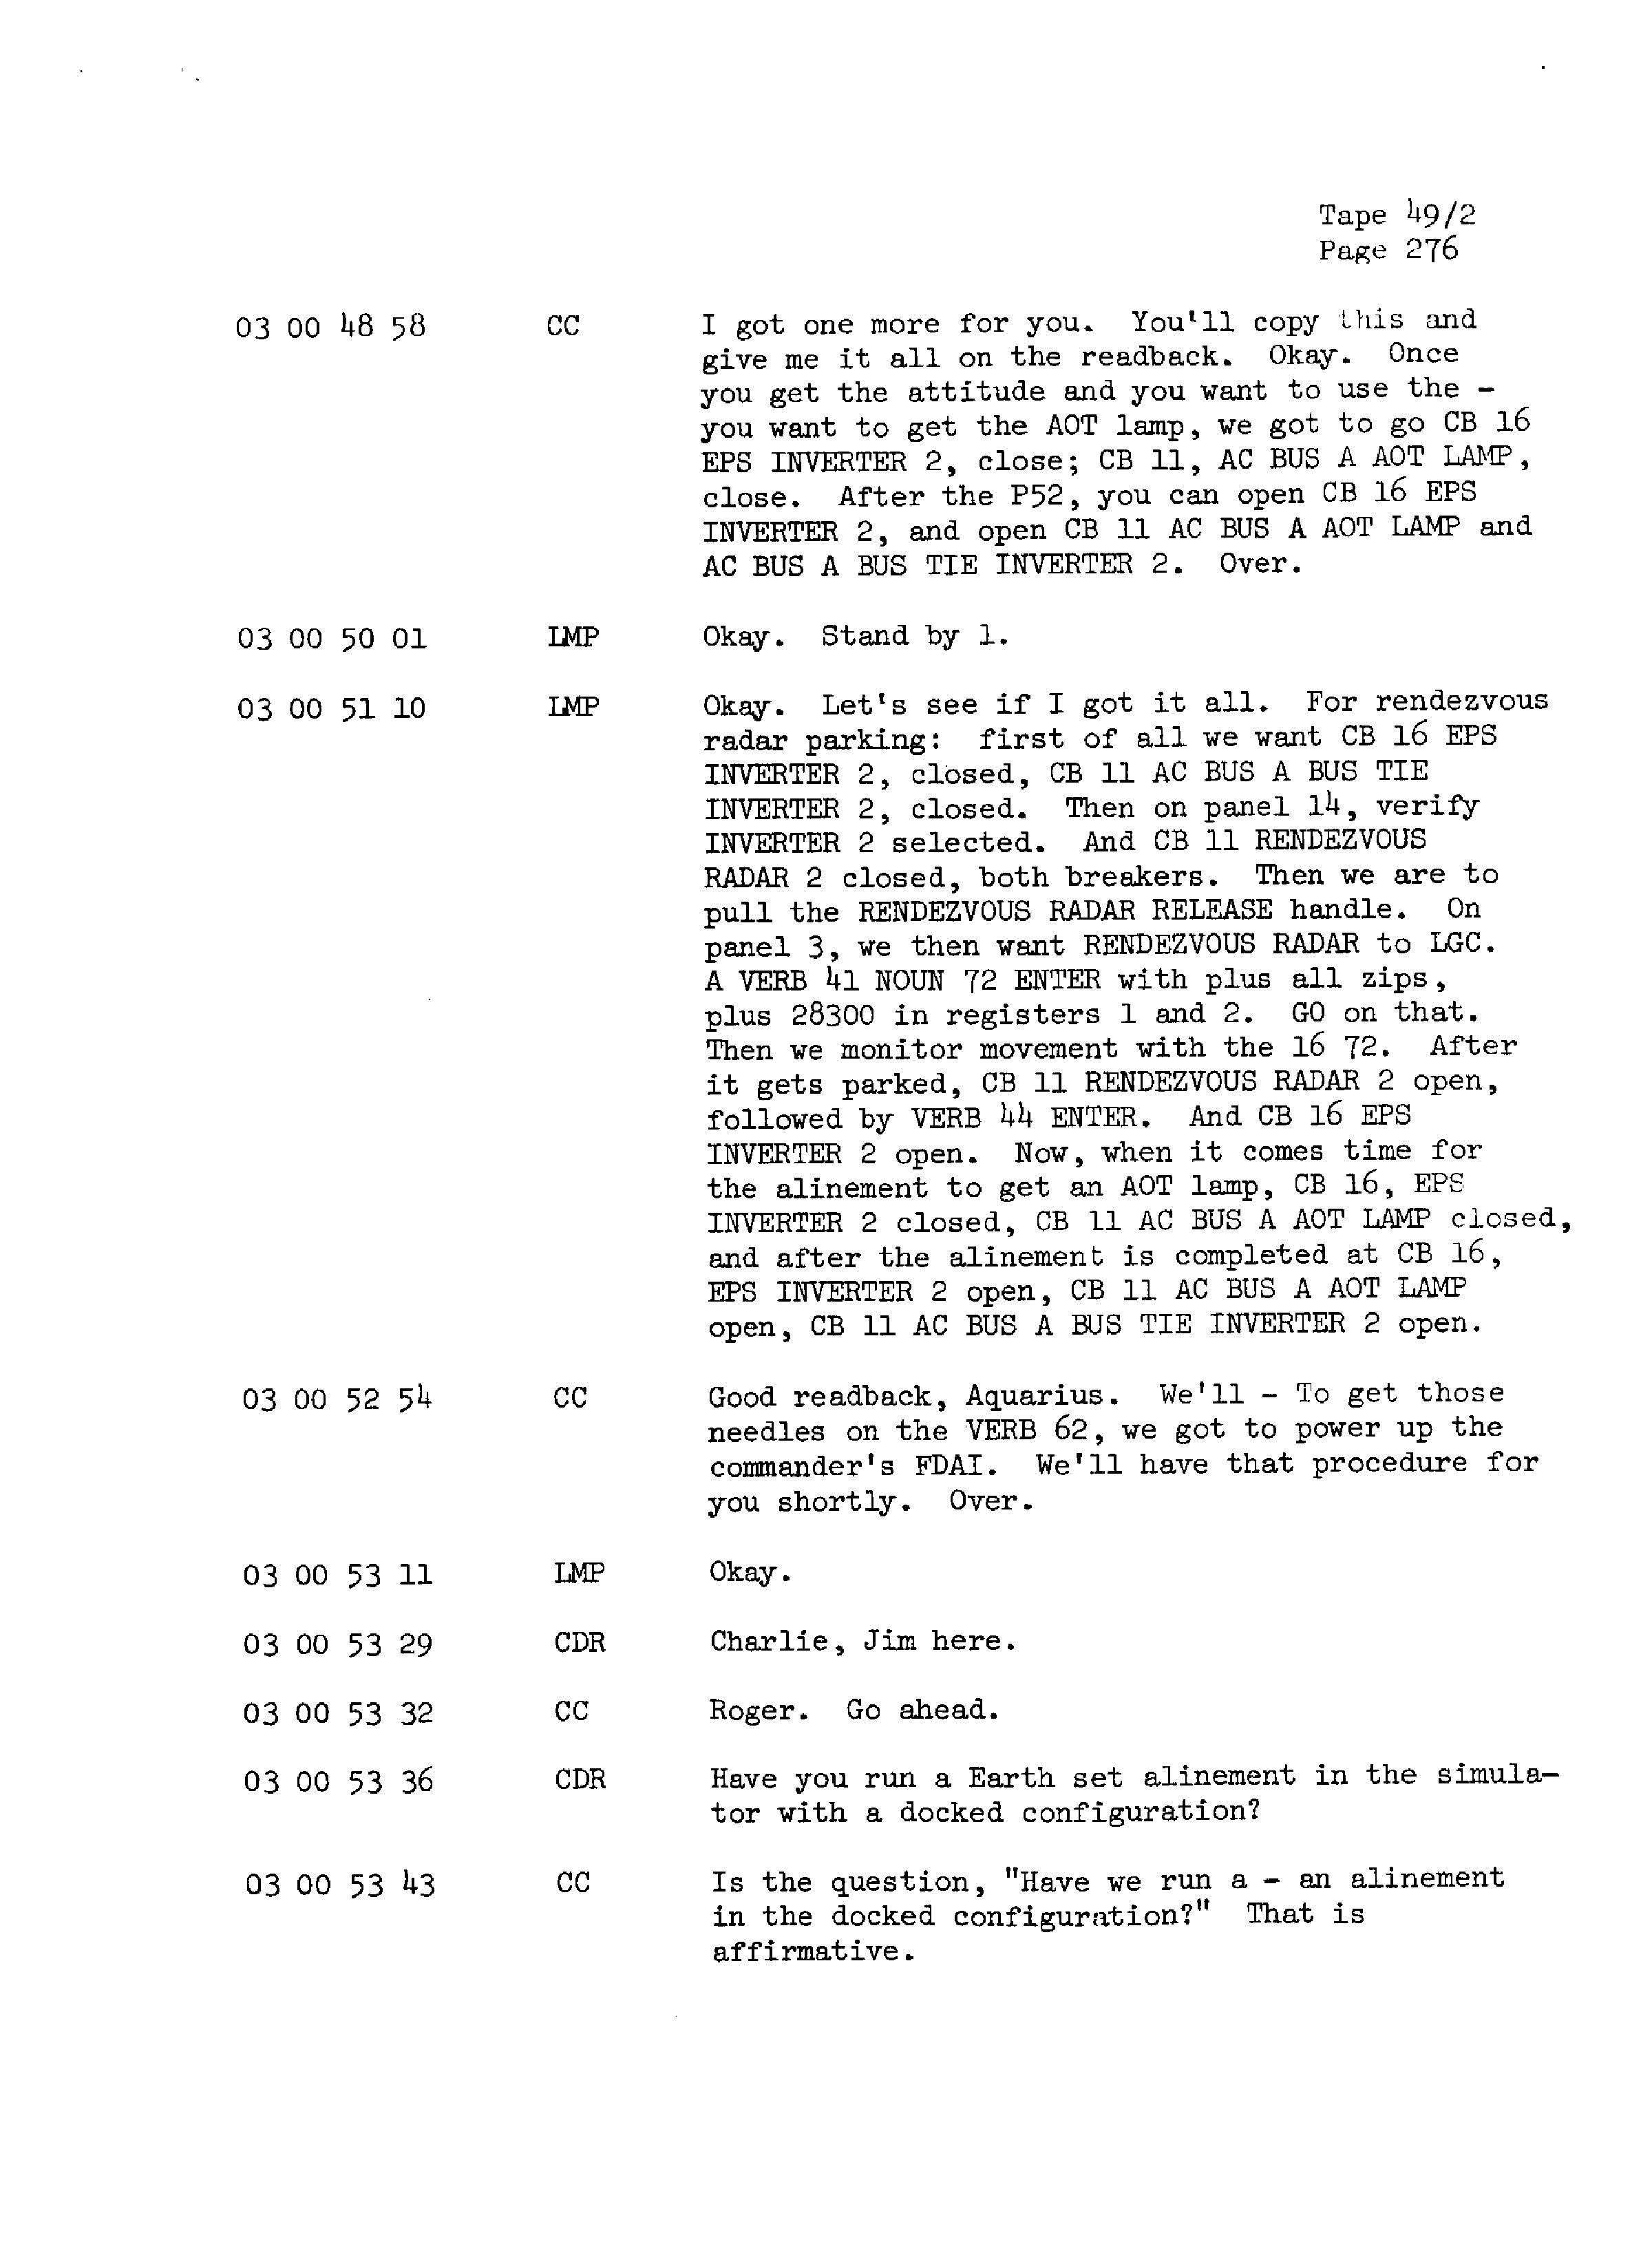 Page 283 of Apollo 13’s original transcript